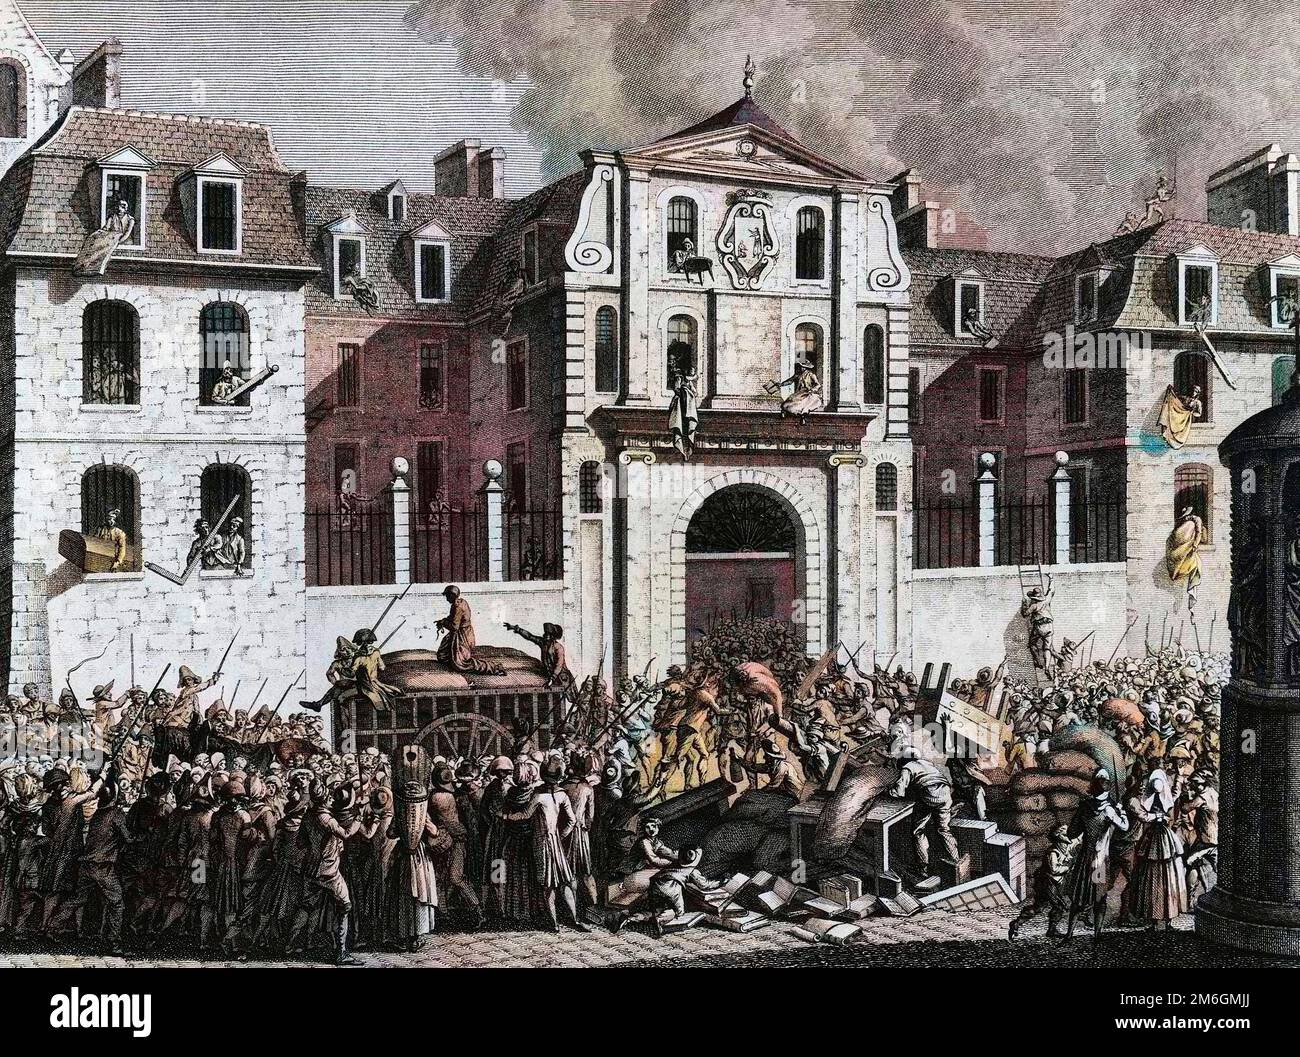 Revolution francaise de 1789 - French Revolution:  Pillage de la maison Saint Lazare a Paris le lundi 13 juillet 1789 par les revolutionnaires. Gravure de Berthaut d'apres Prieur. Stock Photo